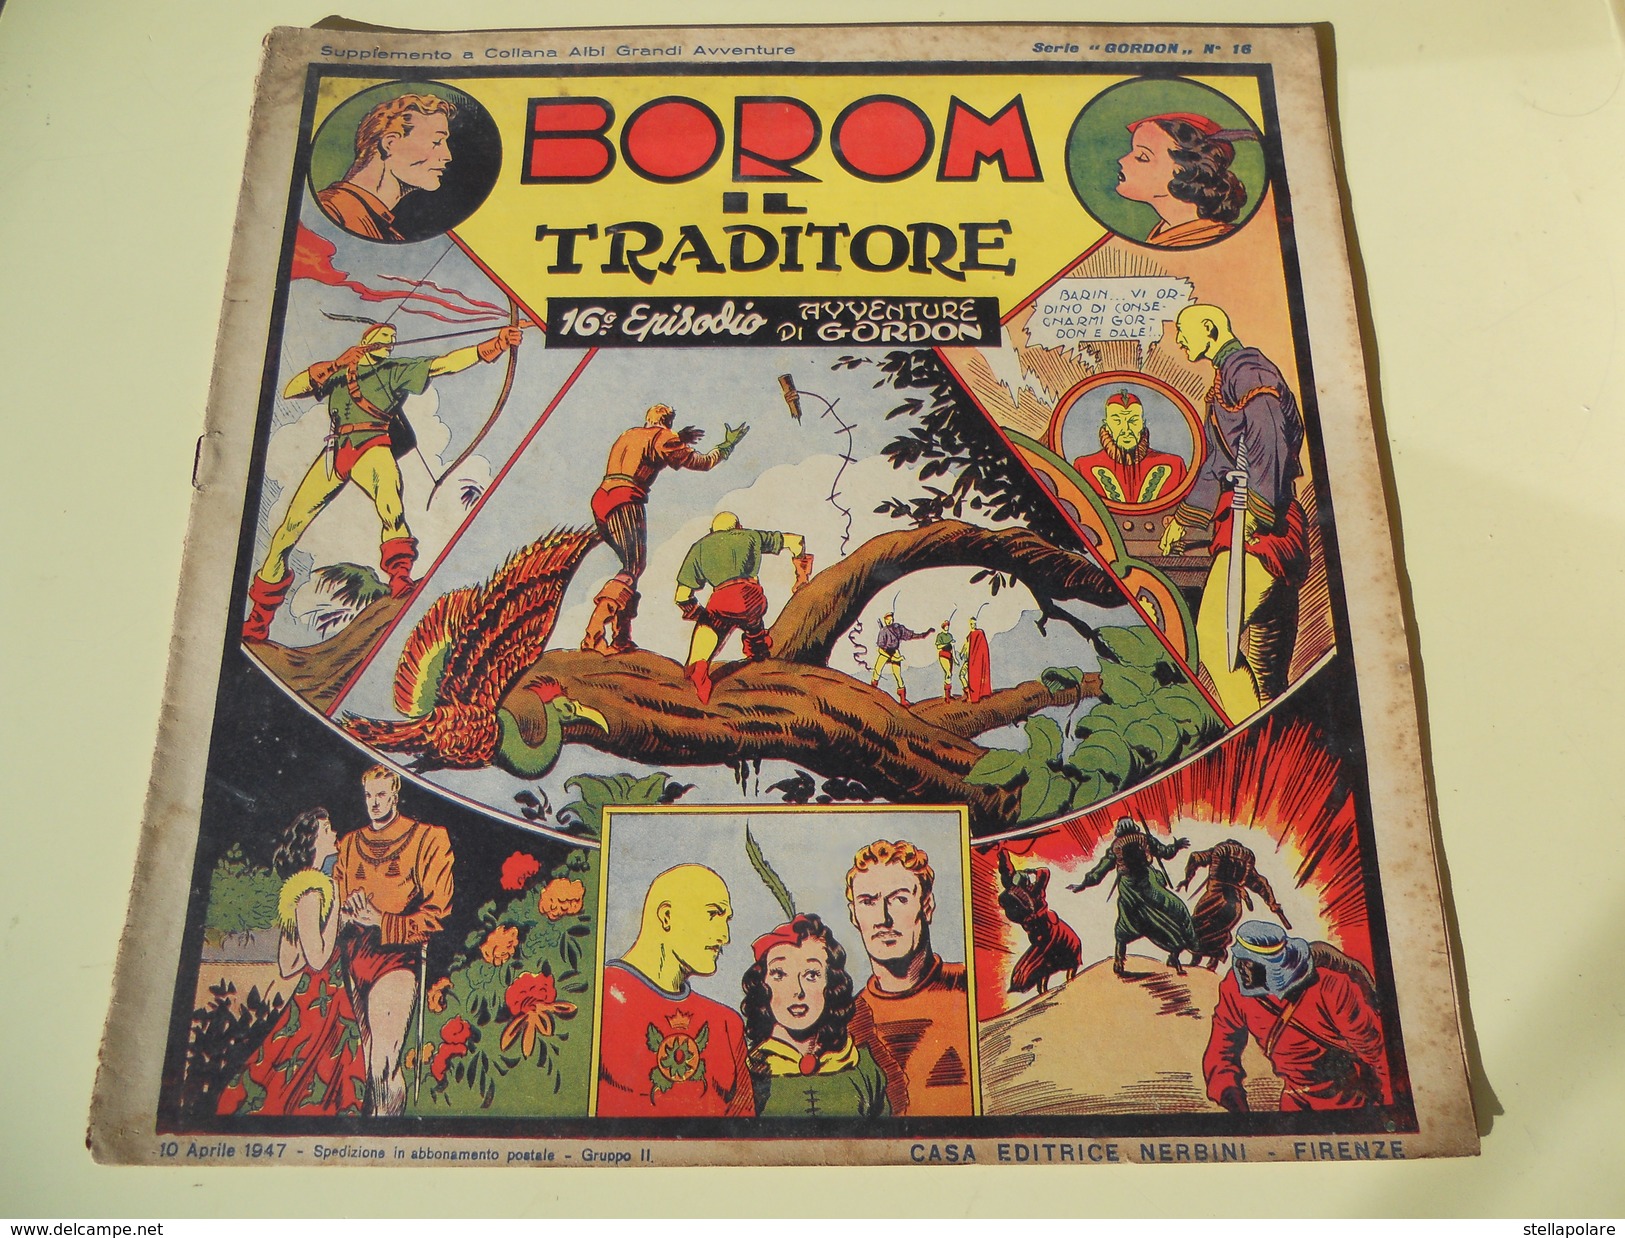 NERBINI - GRANDI AVVENTURE - SERIE GORDON N. 16 - BOROM IL TRADITORE - 1947 - Classic (1930-50)